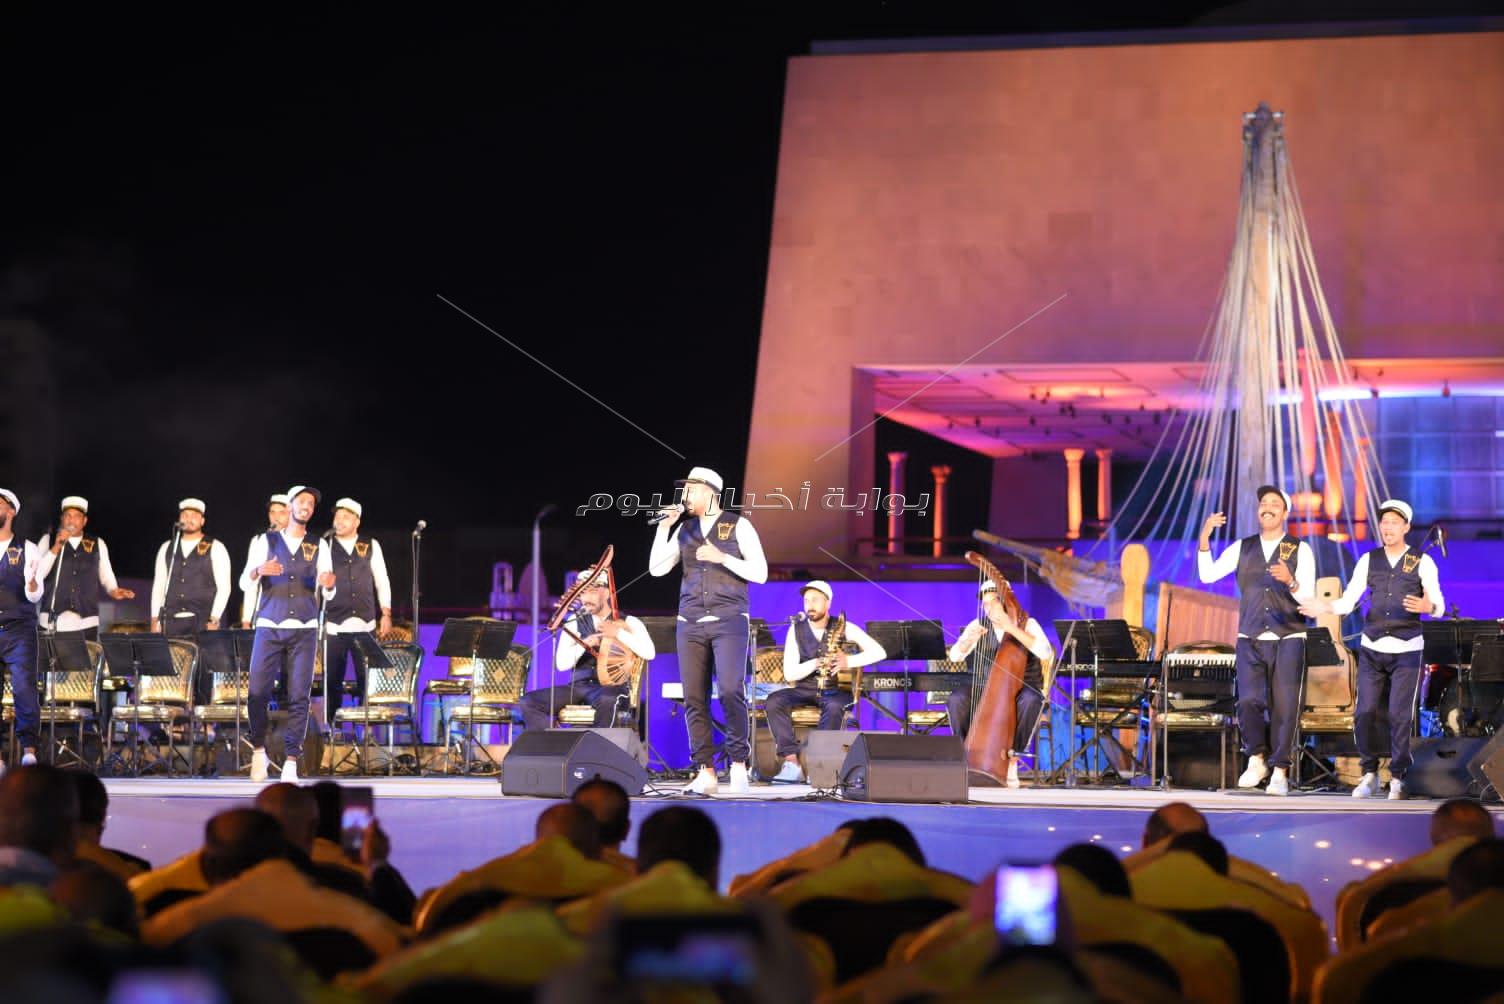 إنطلاق مهرجان السويس الأول  للموسيقى والغناء